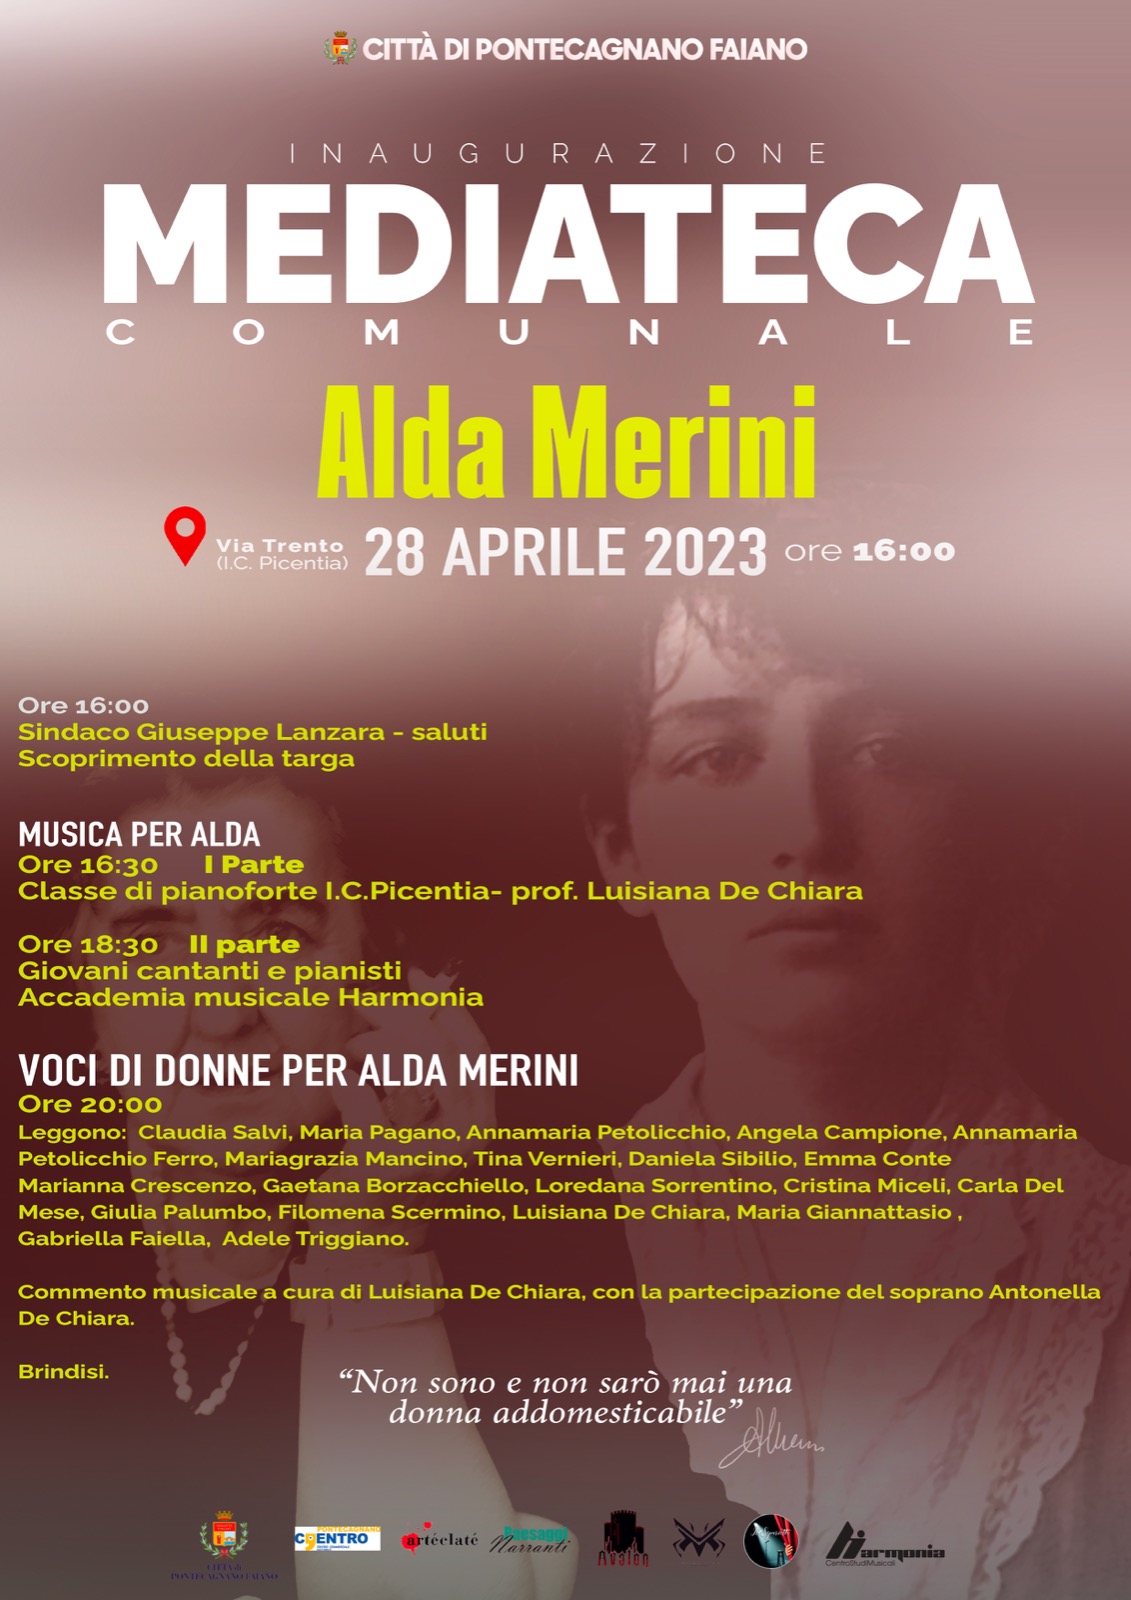 Pontecagnano Faiano: inaugurazione Mediateca Multimediale Comunale Alda Merini